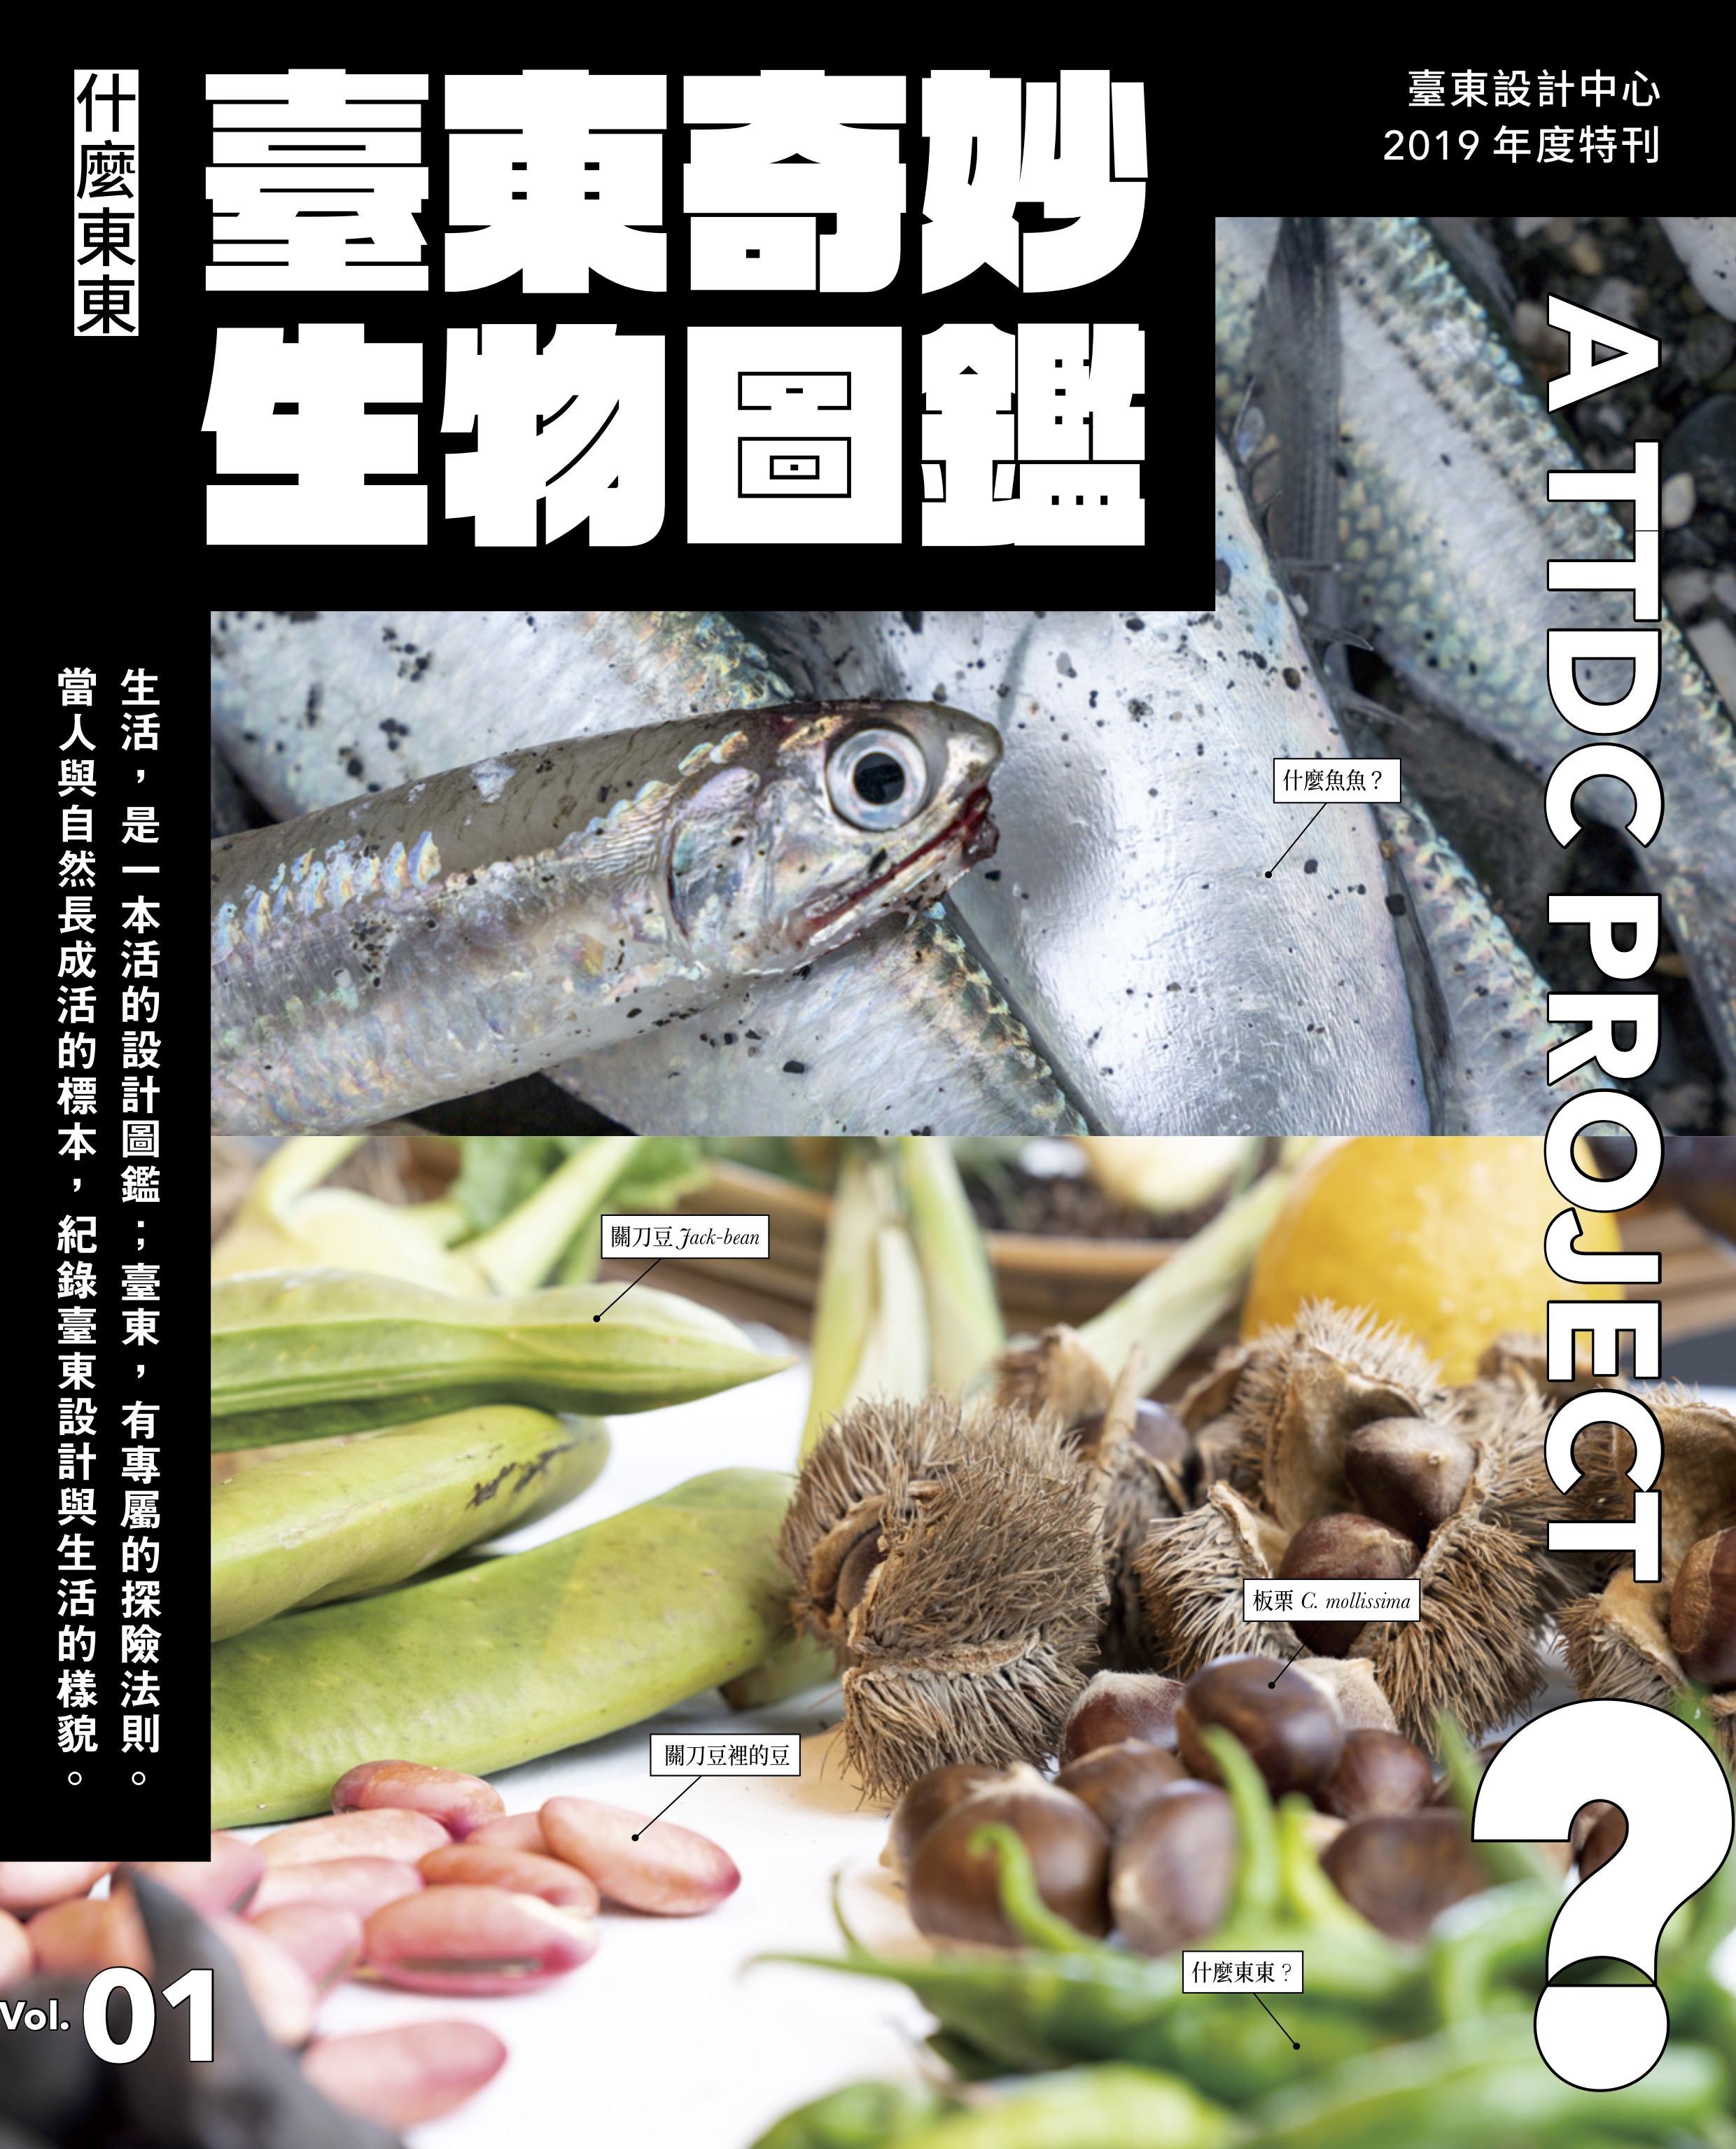 年度特刊 -《什麼東東？》Vol.1— 臺東奇妙生物圖鑑